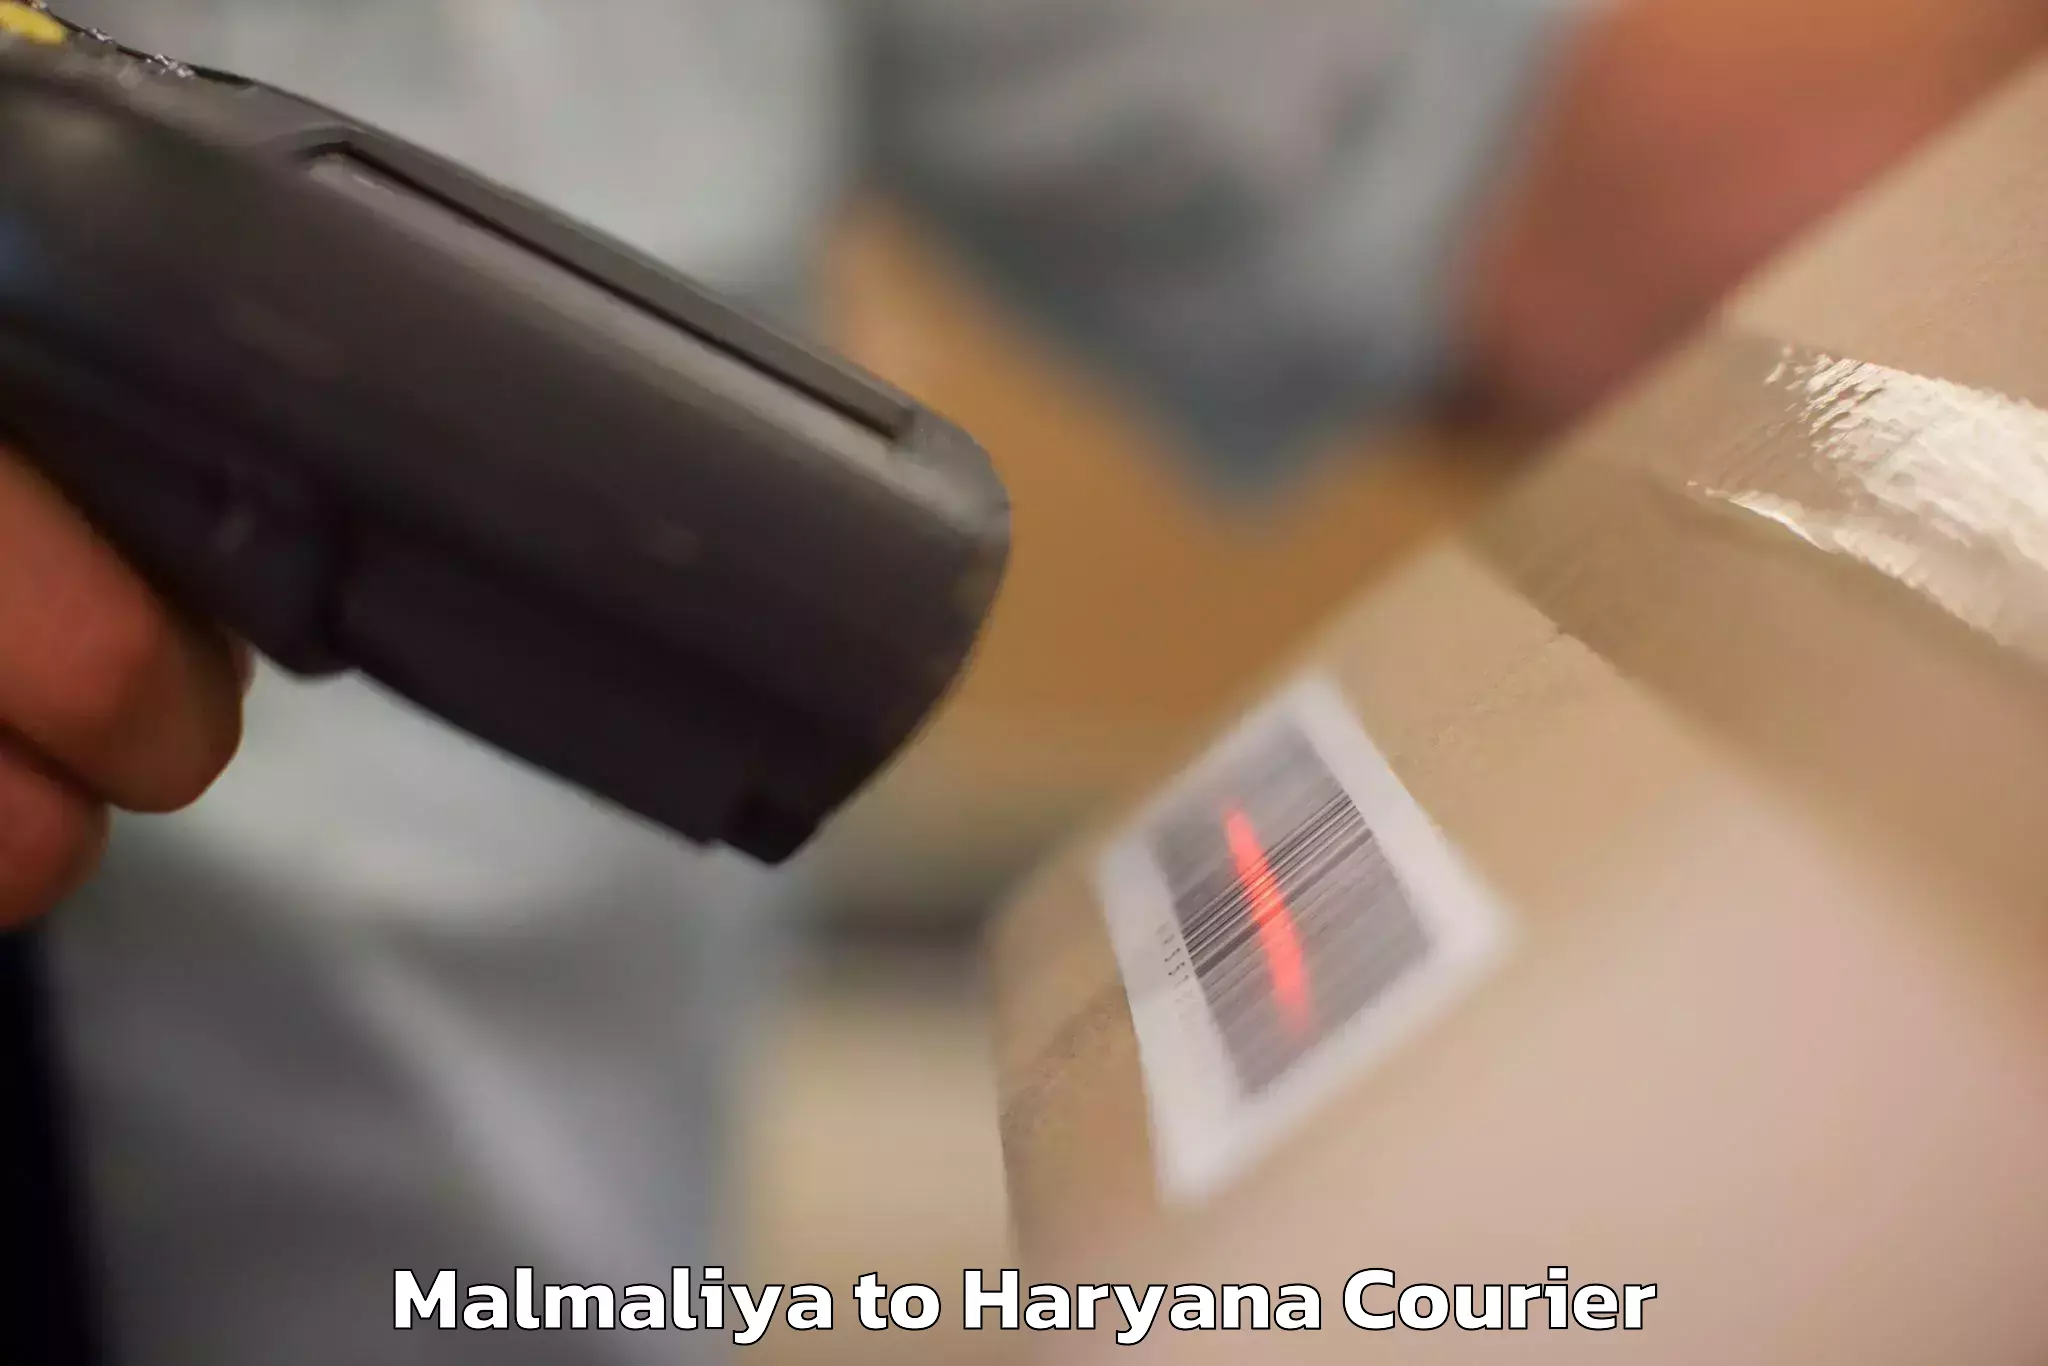 Global baggage shipping Malmaliya to NCR Haryana